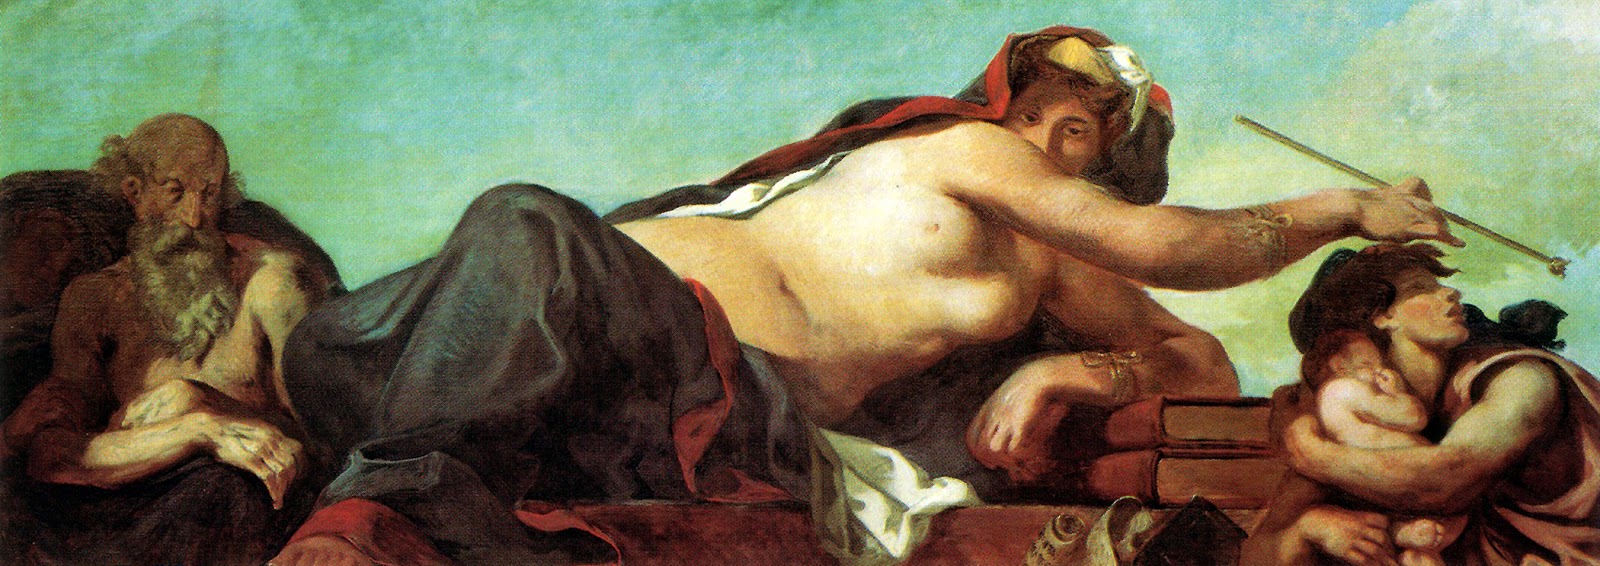 Eugene+Delacroix-1798-1863 (140).jpg